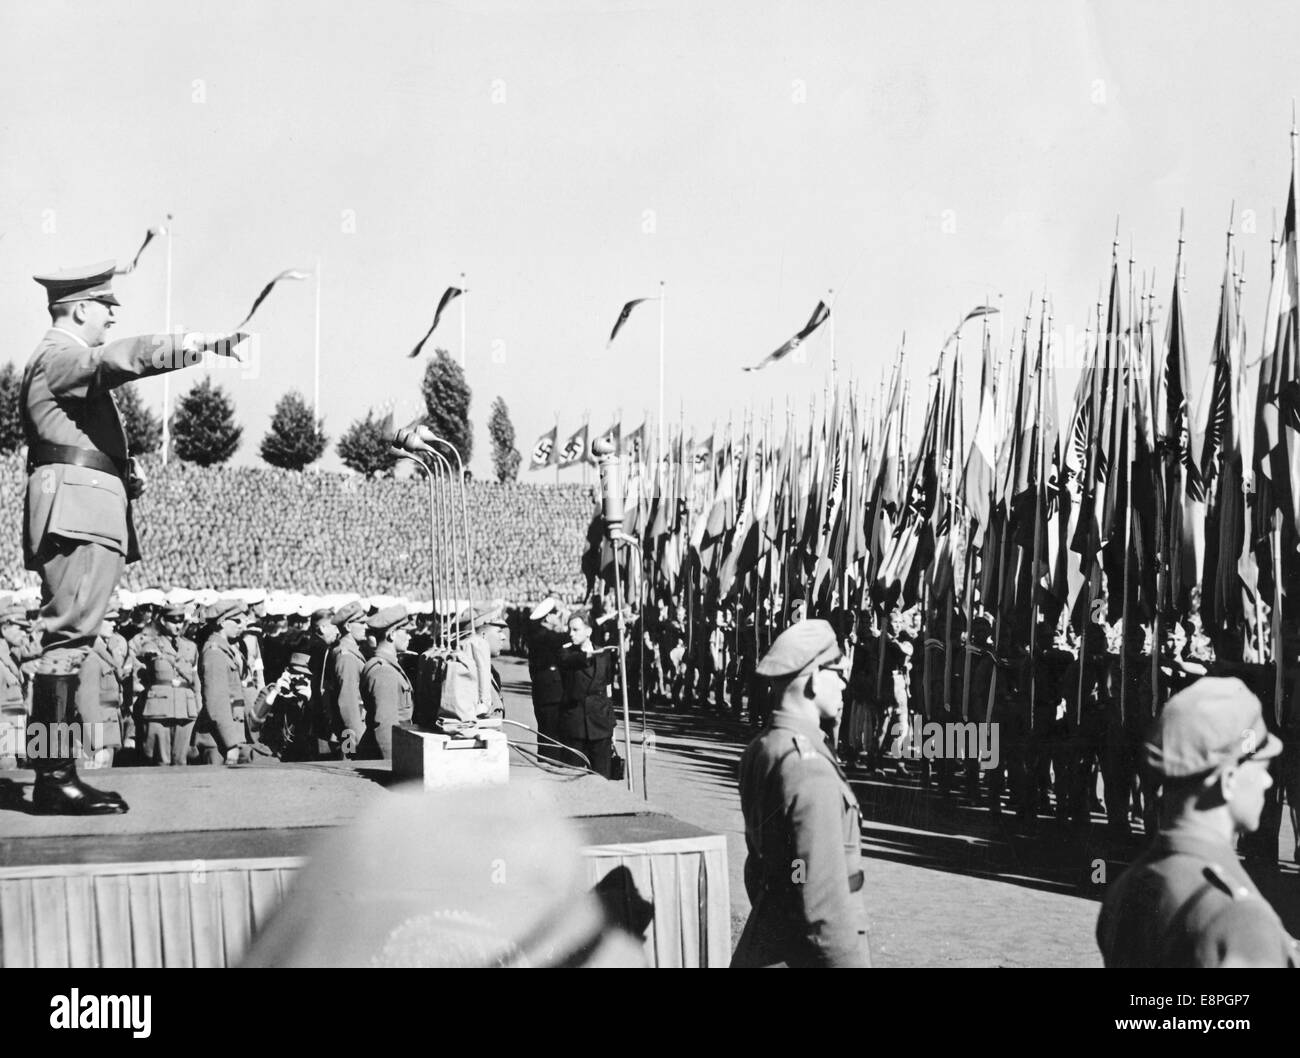 Rally di Norimberga 1936 a Norimberga, Germania - Adolf Hitler saluta i portieri della bandiera della Gioventù Hitler (HJ) alle folle di raduni del partito nazista. (Difetti di qualità dovuti alla copia storica dell'immagine) Fotoarchiv für Zeitgeschichtee - NESSUN SERVIZIO DI CABLAGGIO - Foto Stock